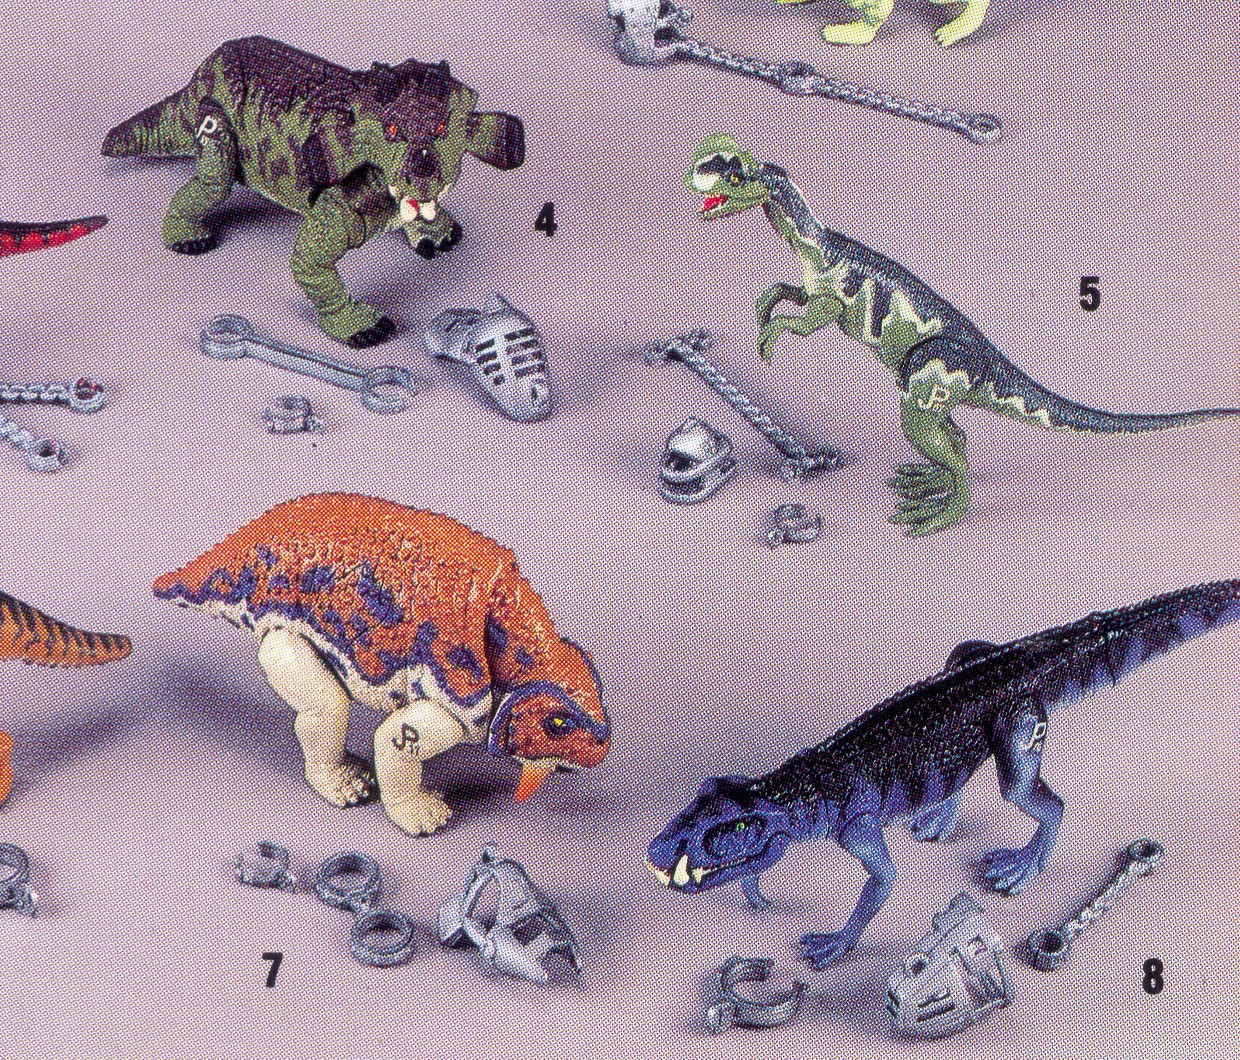 Ornithosuchus, Scutosaurus and Estemmenosuchus